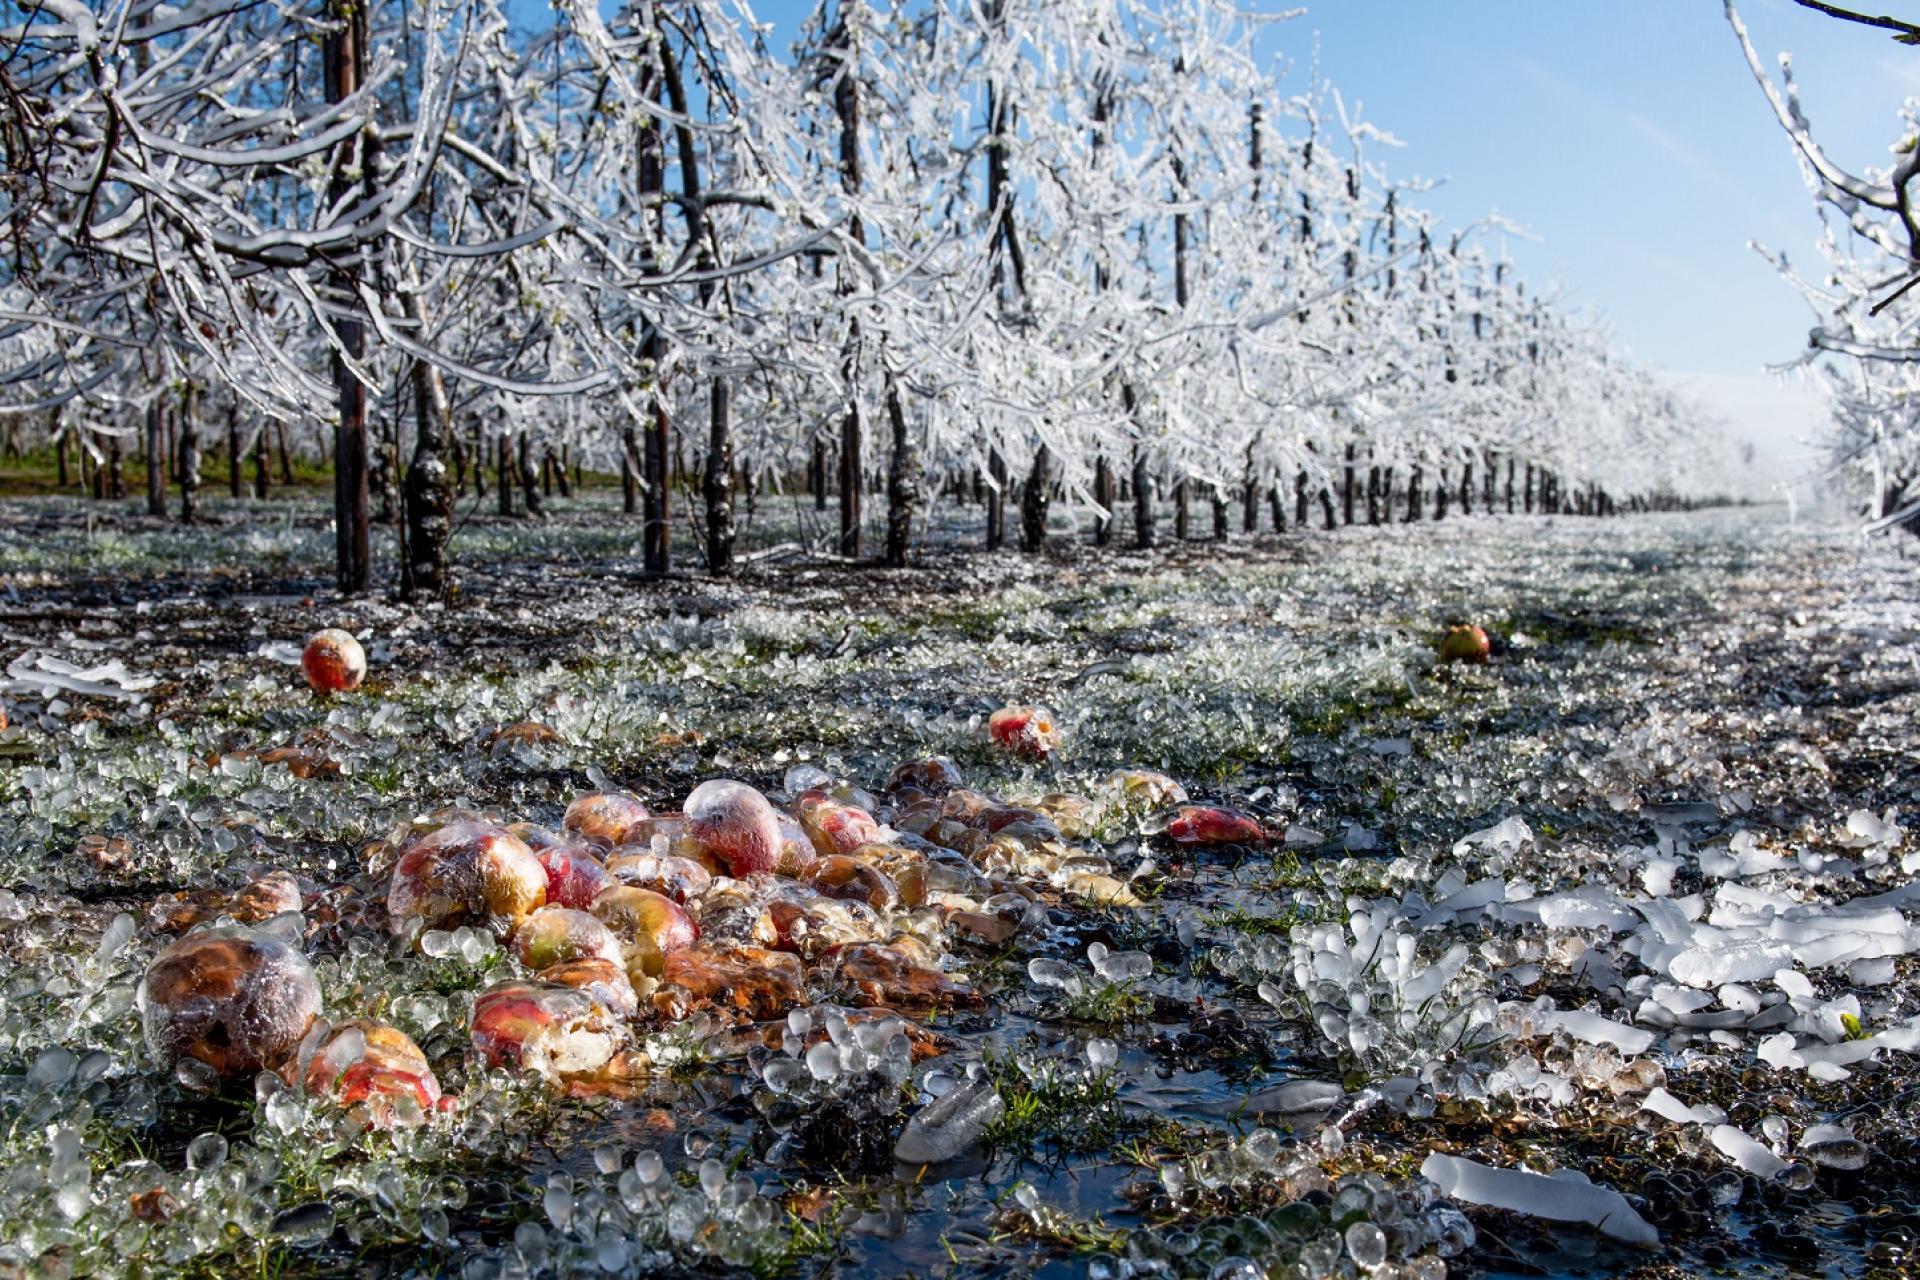 Bevroren appelbomen met rijp in een boomgaard. Op de voorgrond liggen bevroren appels.